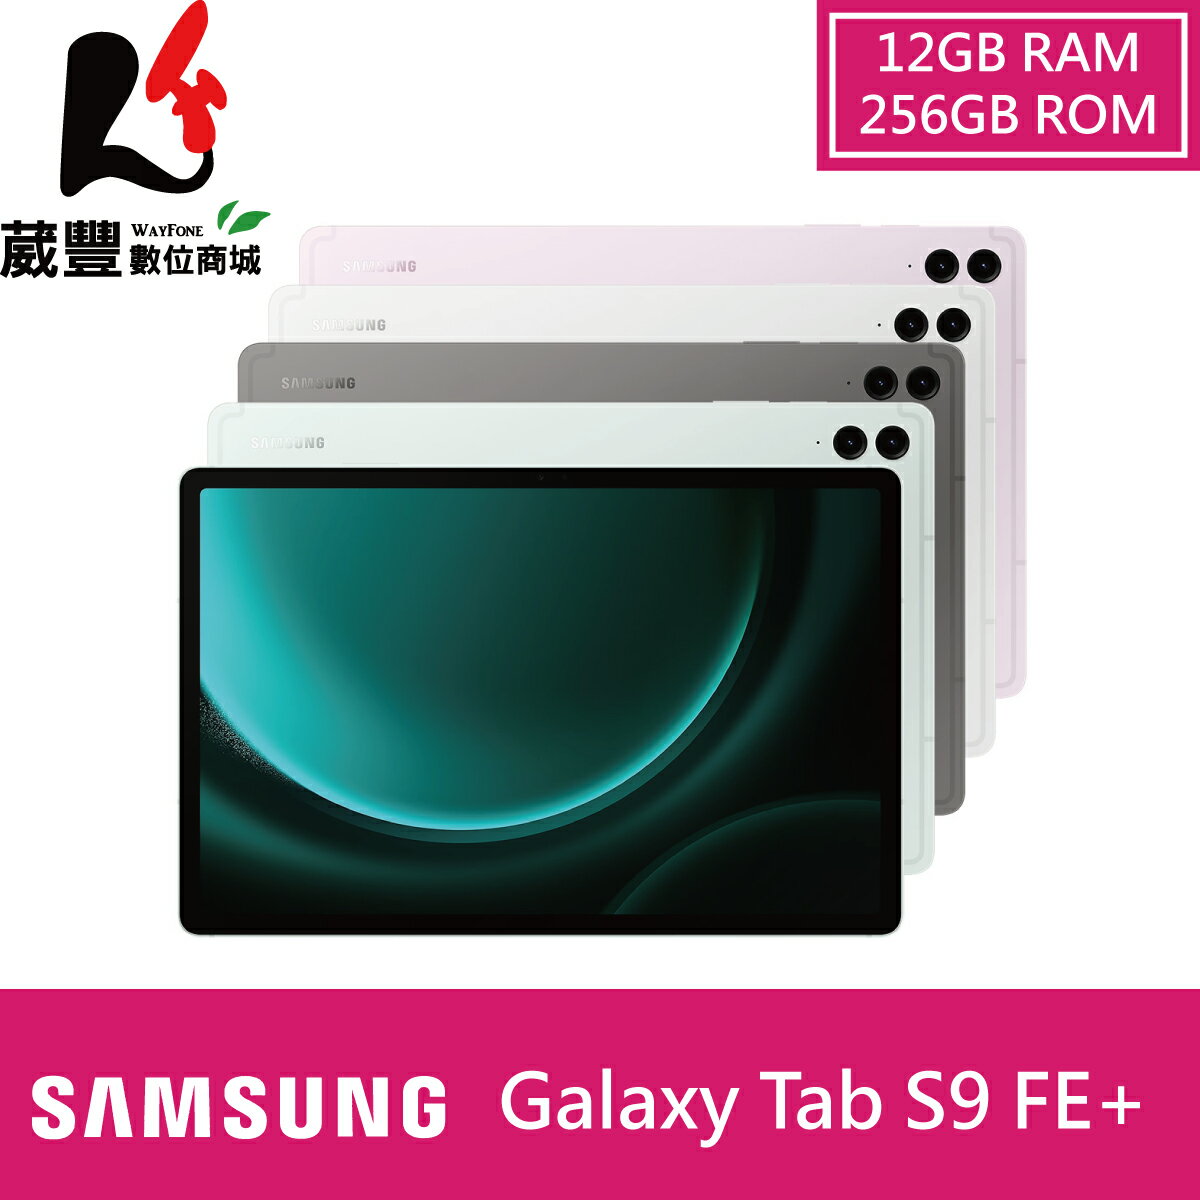 【贈原廠行動電源】SAMSUNG Galaxy Tab S9 FE+ X610 (12G/256GB) WIFI 12.4吋 平板